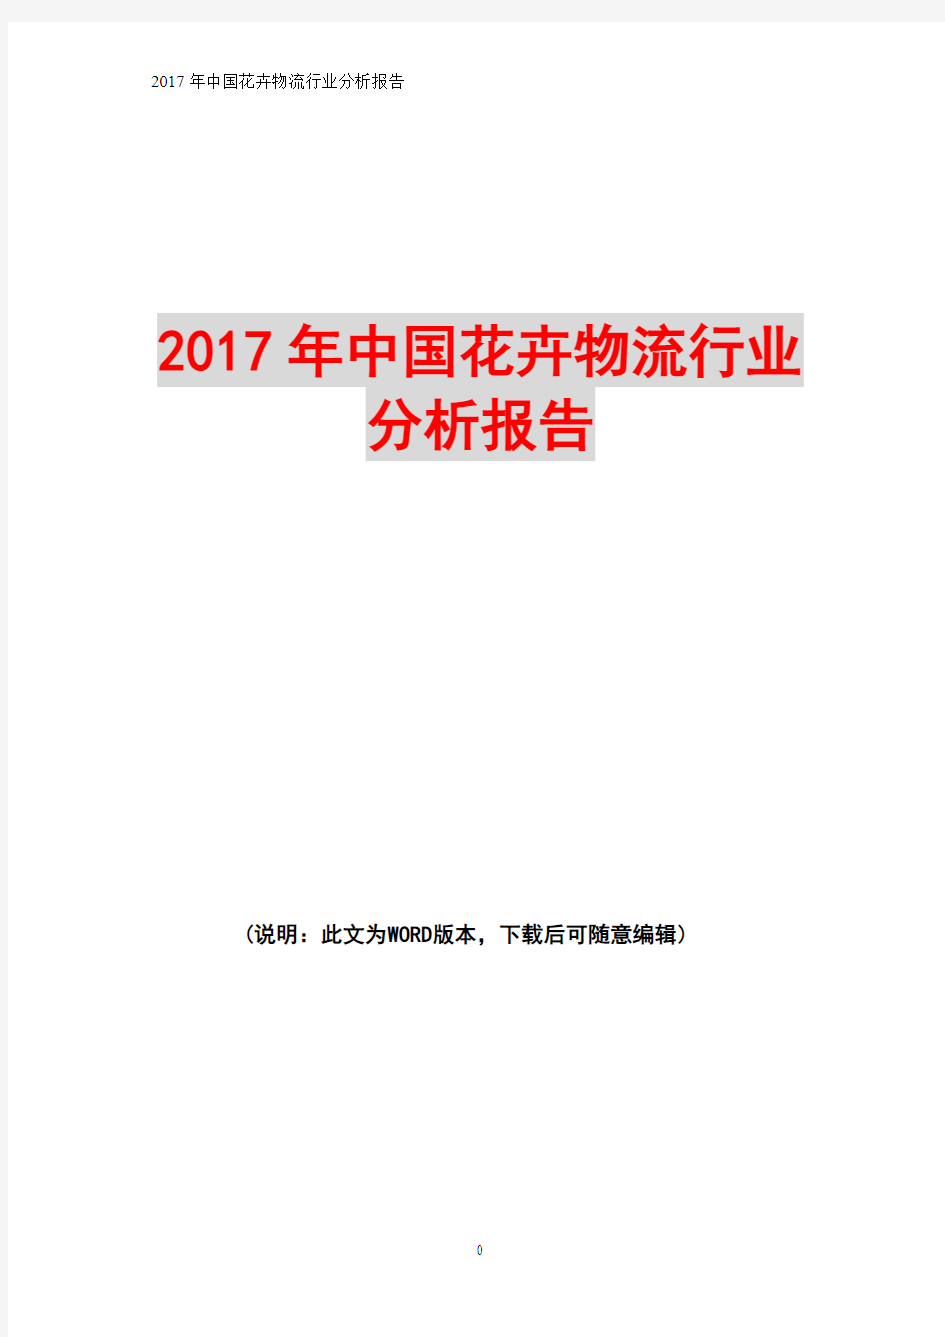 2017年中国花卉物流行业分析报告